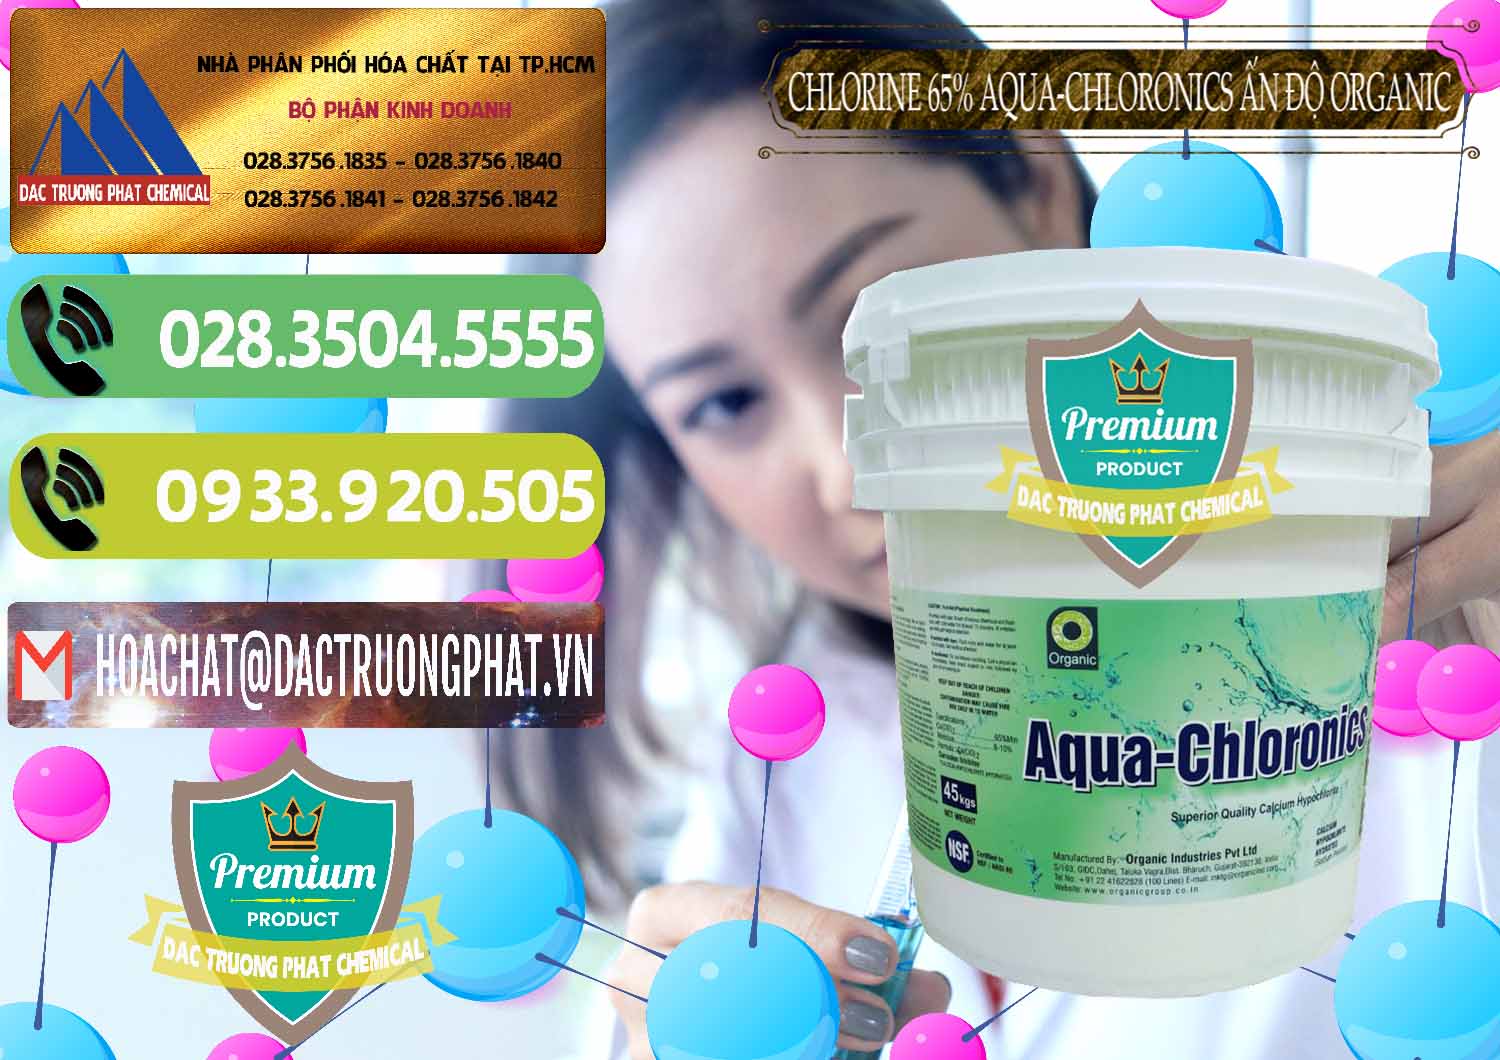 Công ty cung cấp và bán Chlorine – Clorin 65% Aqua-Chloronics Ấn Độ Organic India - 0210 - Đơn vị chuyên bán ( phân phối ) hóa chất tại TP.HCM - hoachatmientay.vn